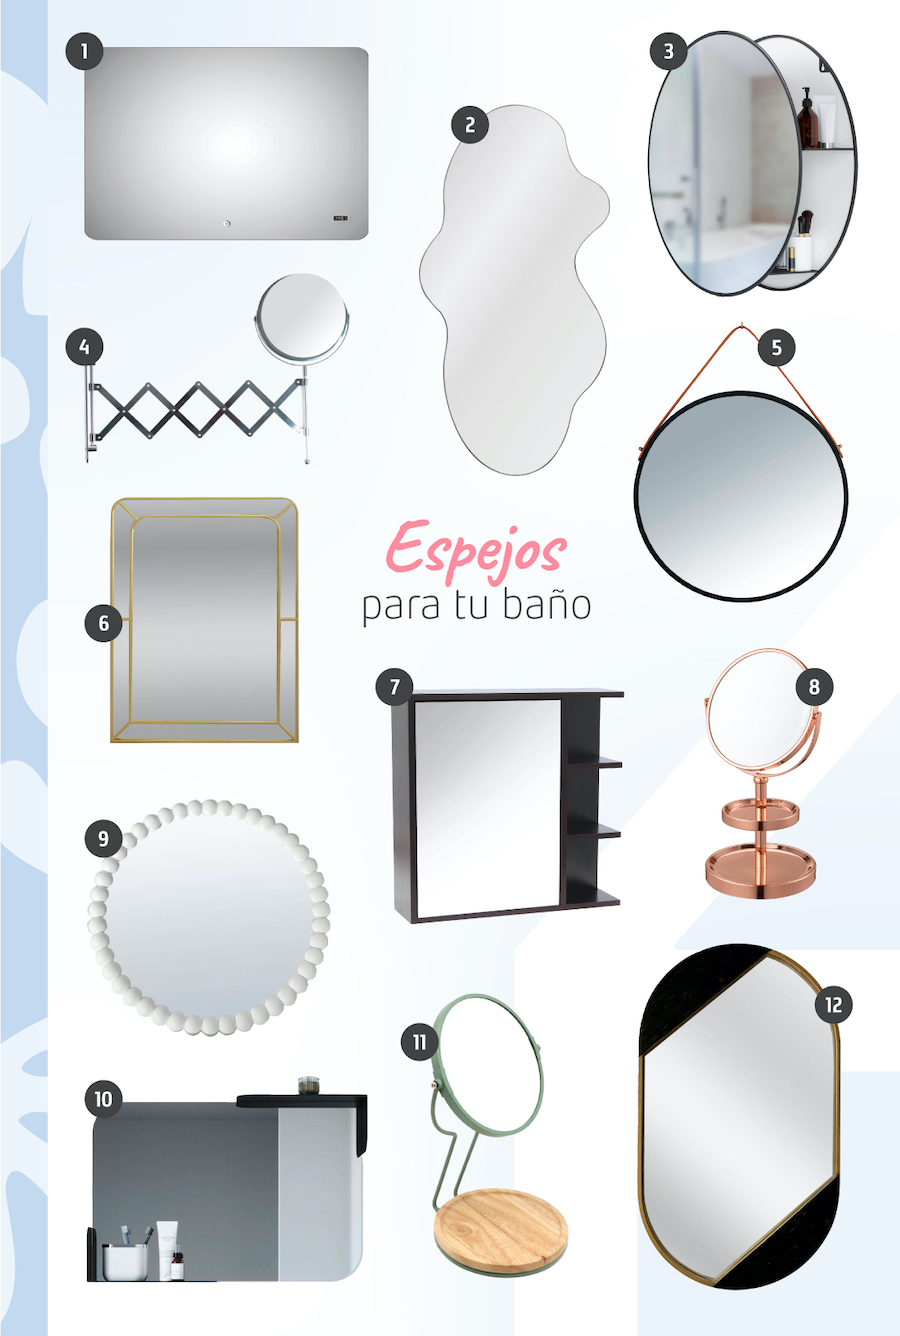 Moodboard de inspiración con 12 opciones de espejos y botiquines disponibles en Sodimac, desde redondos hasta con luces led.